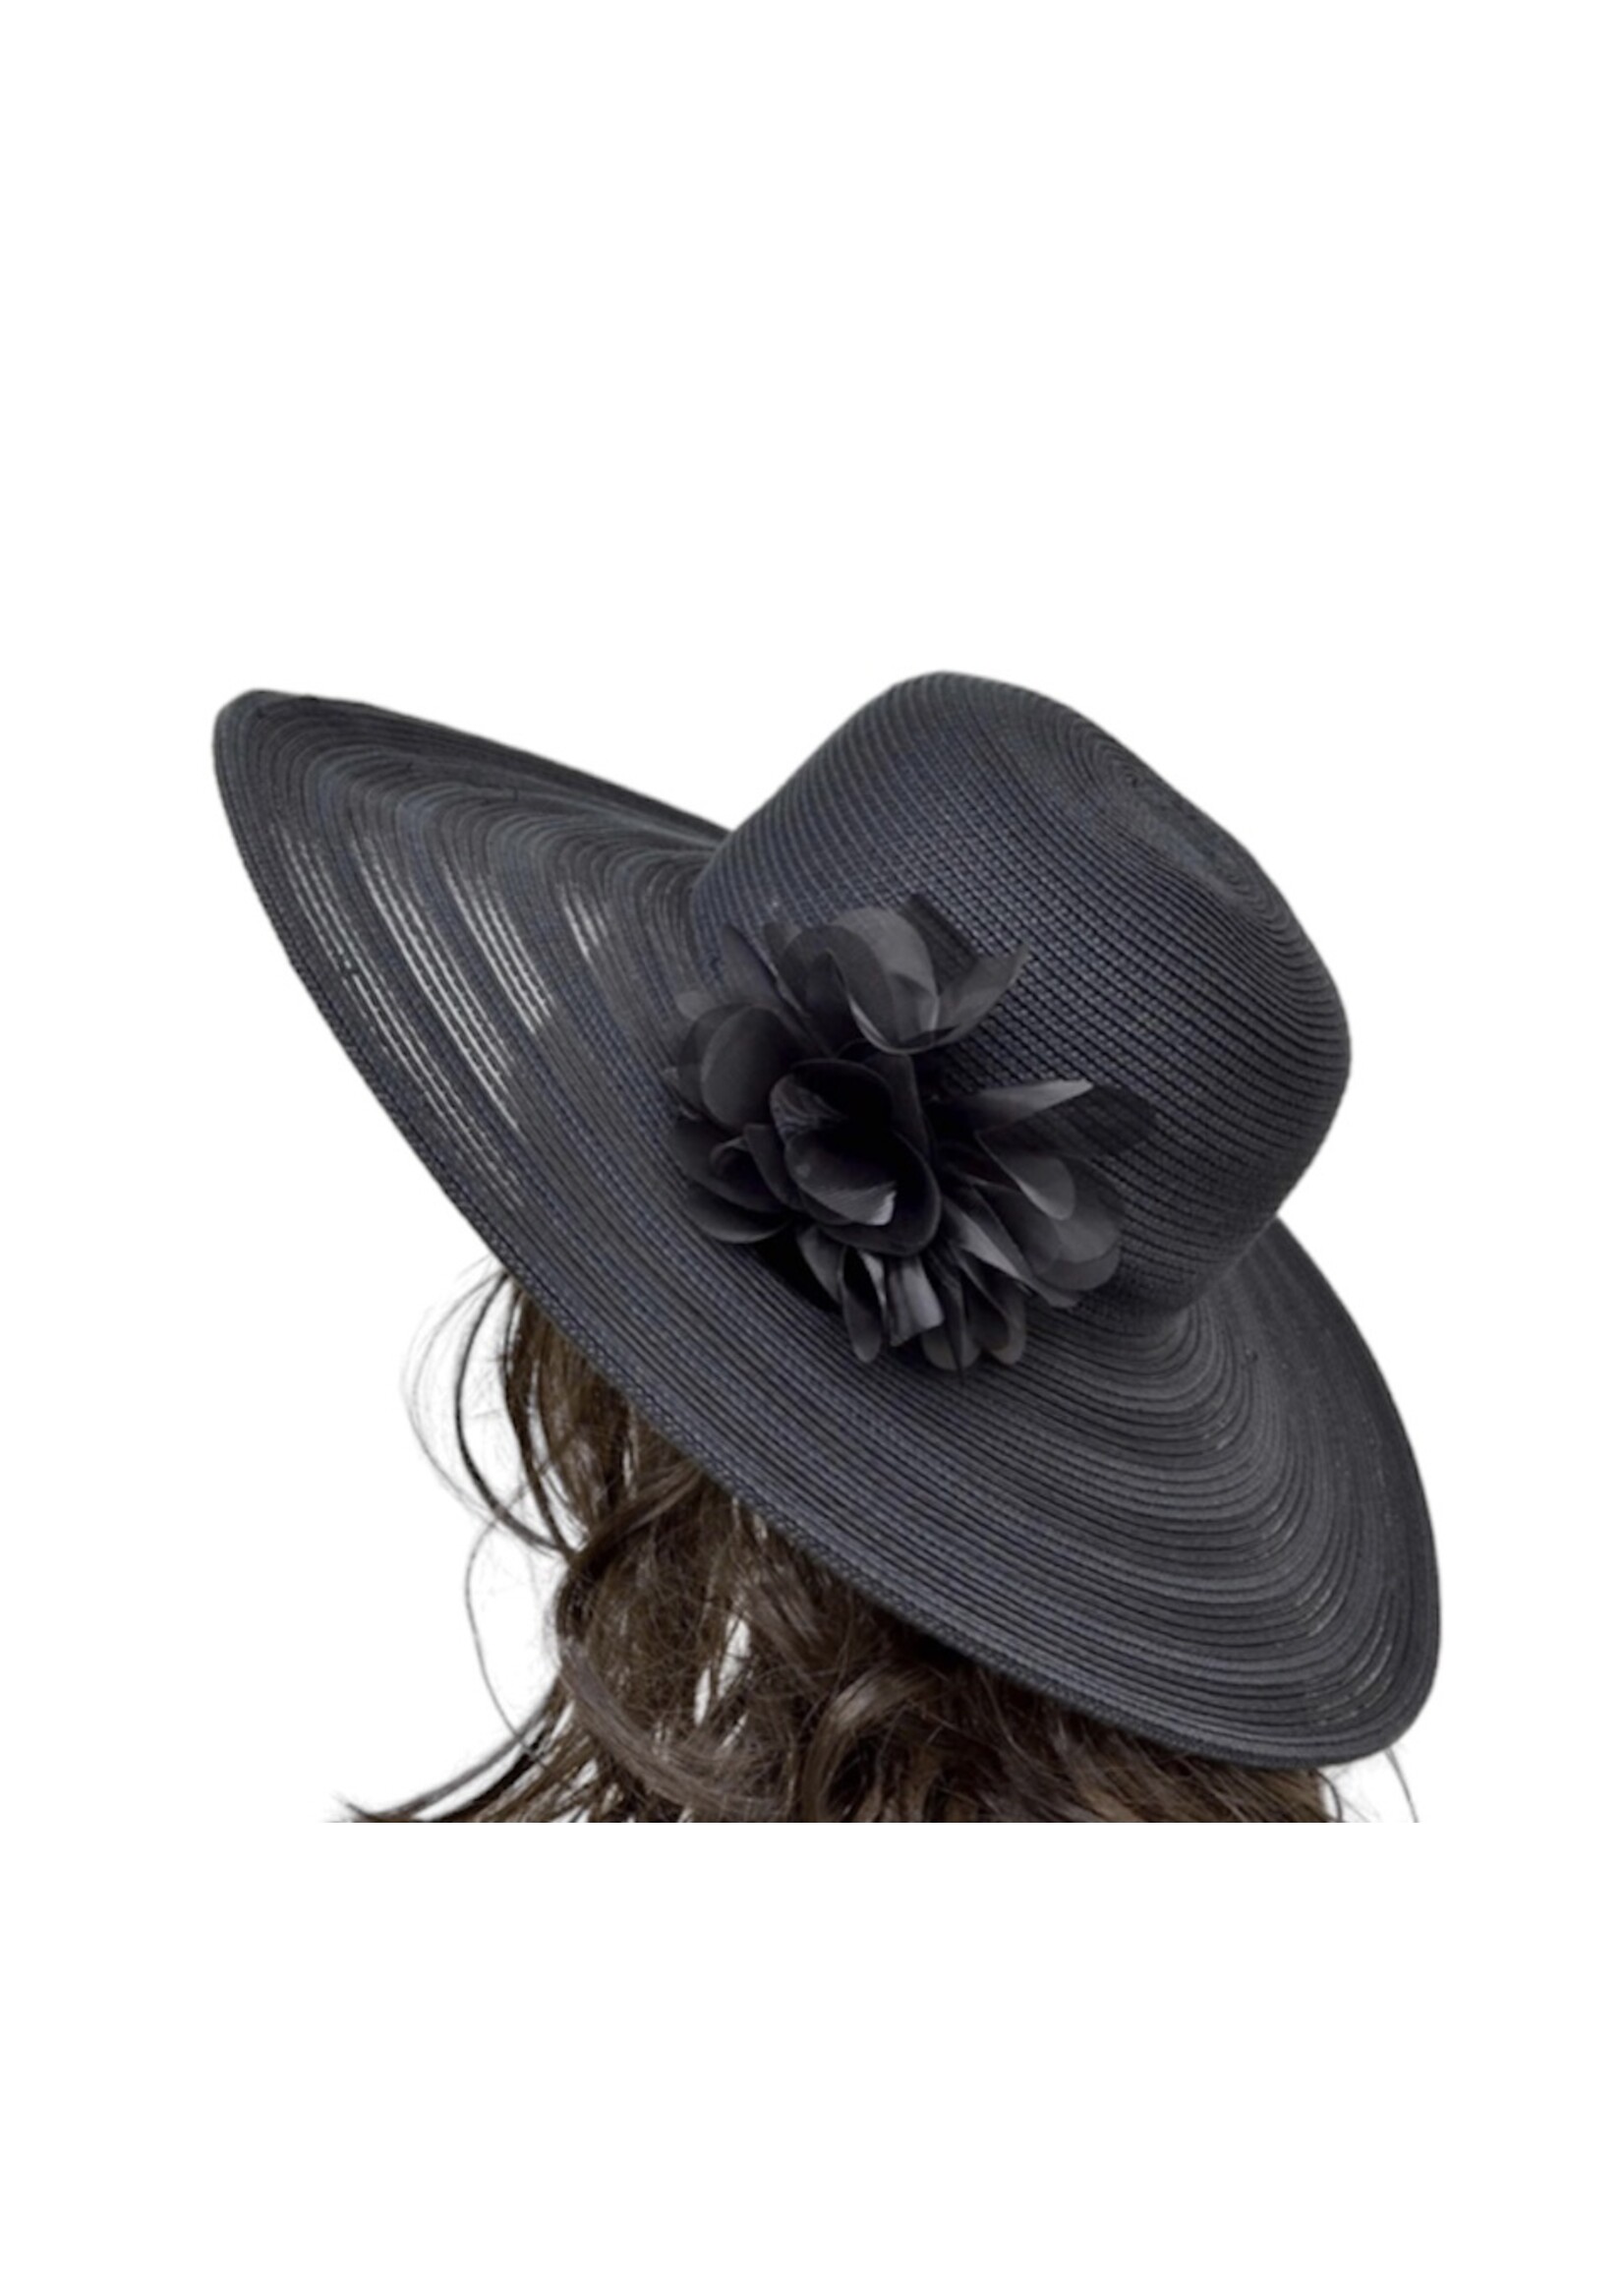 Nine West Nine West Black Summer Hat with Flower Applique, OS